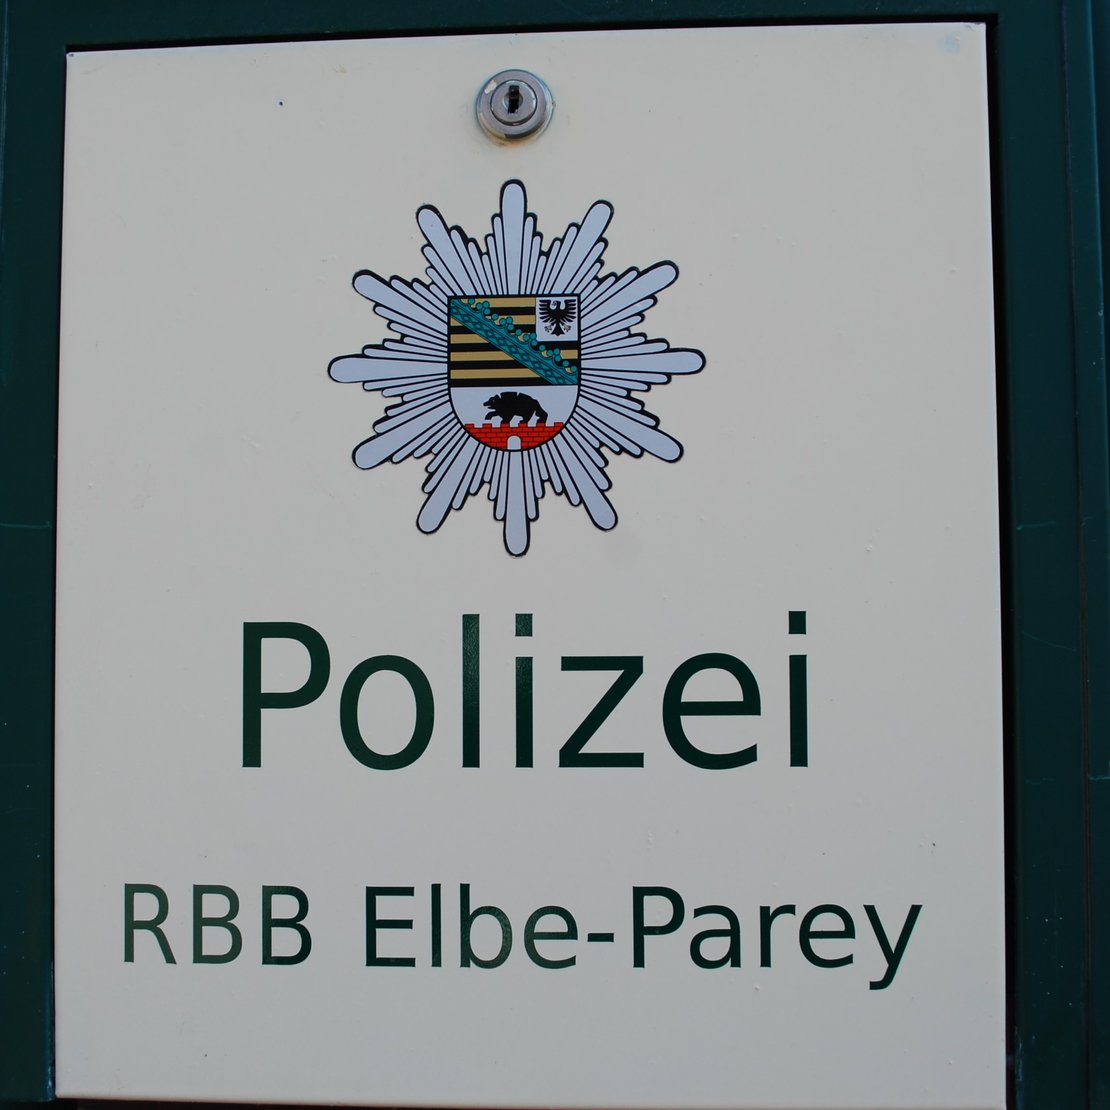 PolizeiRBB.jpg